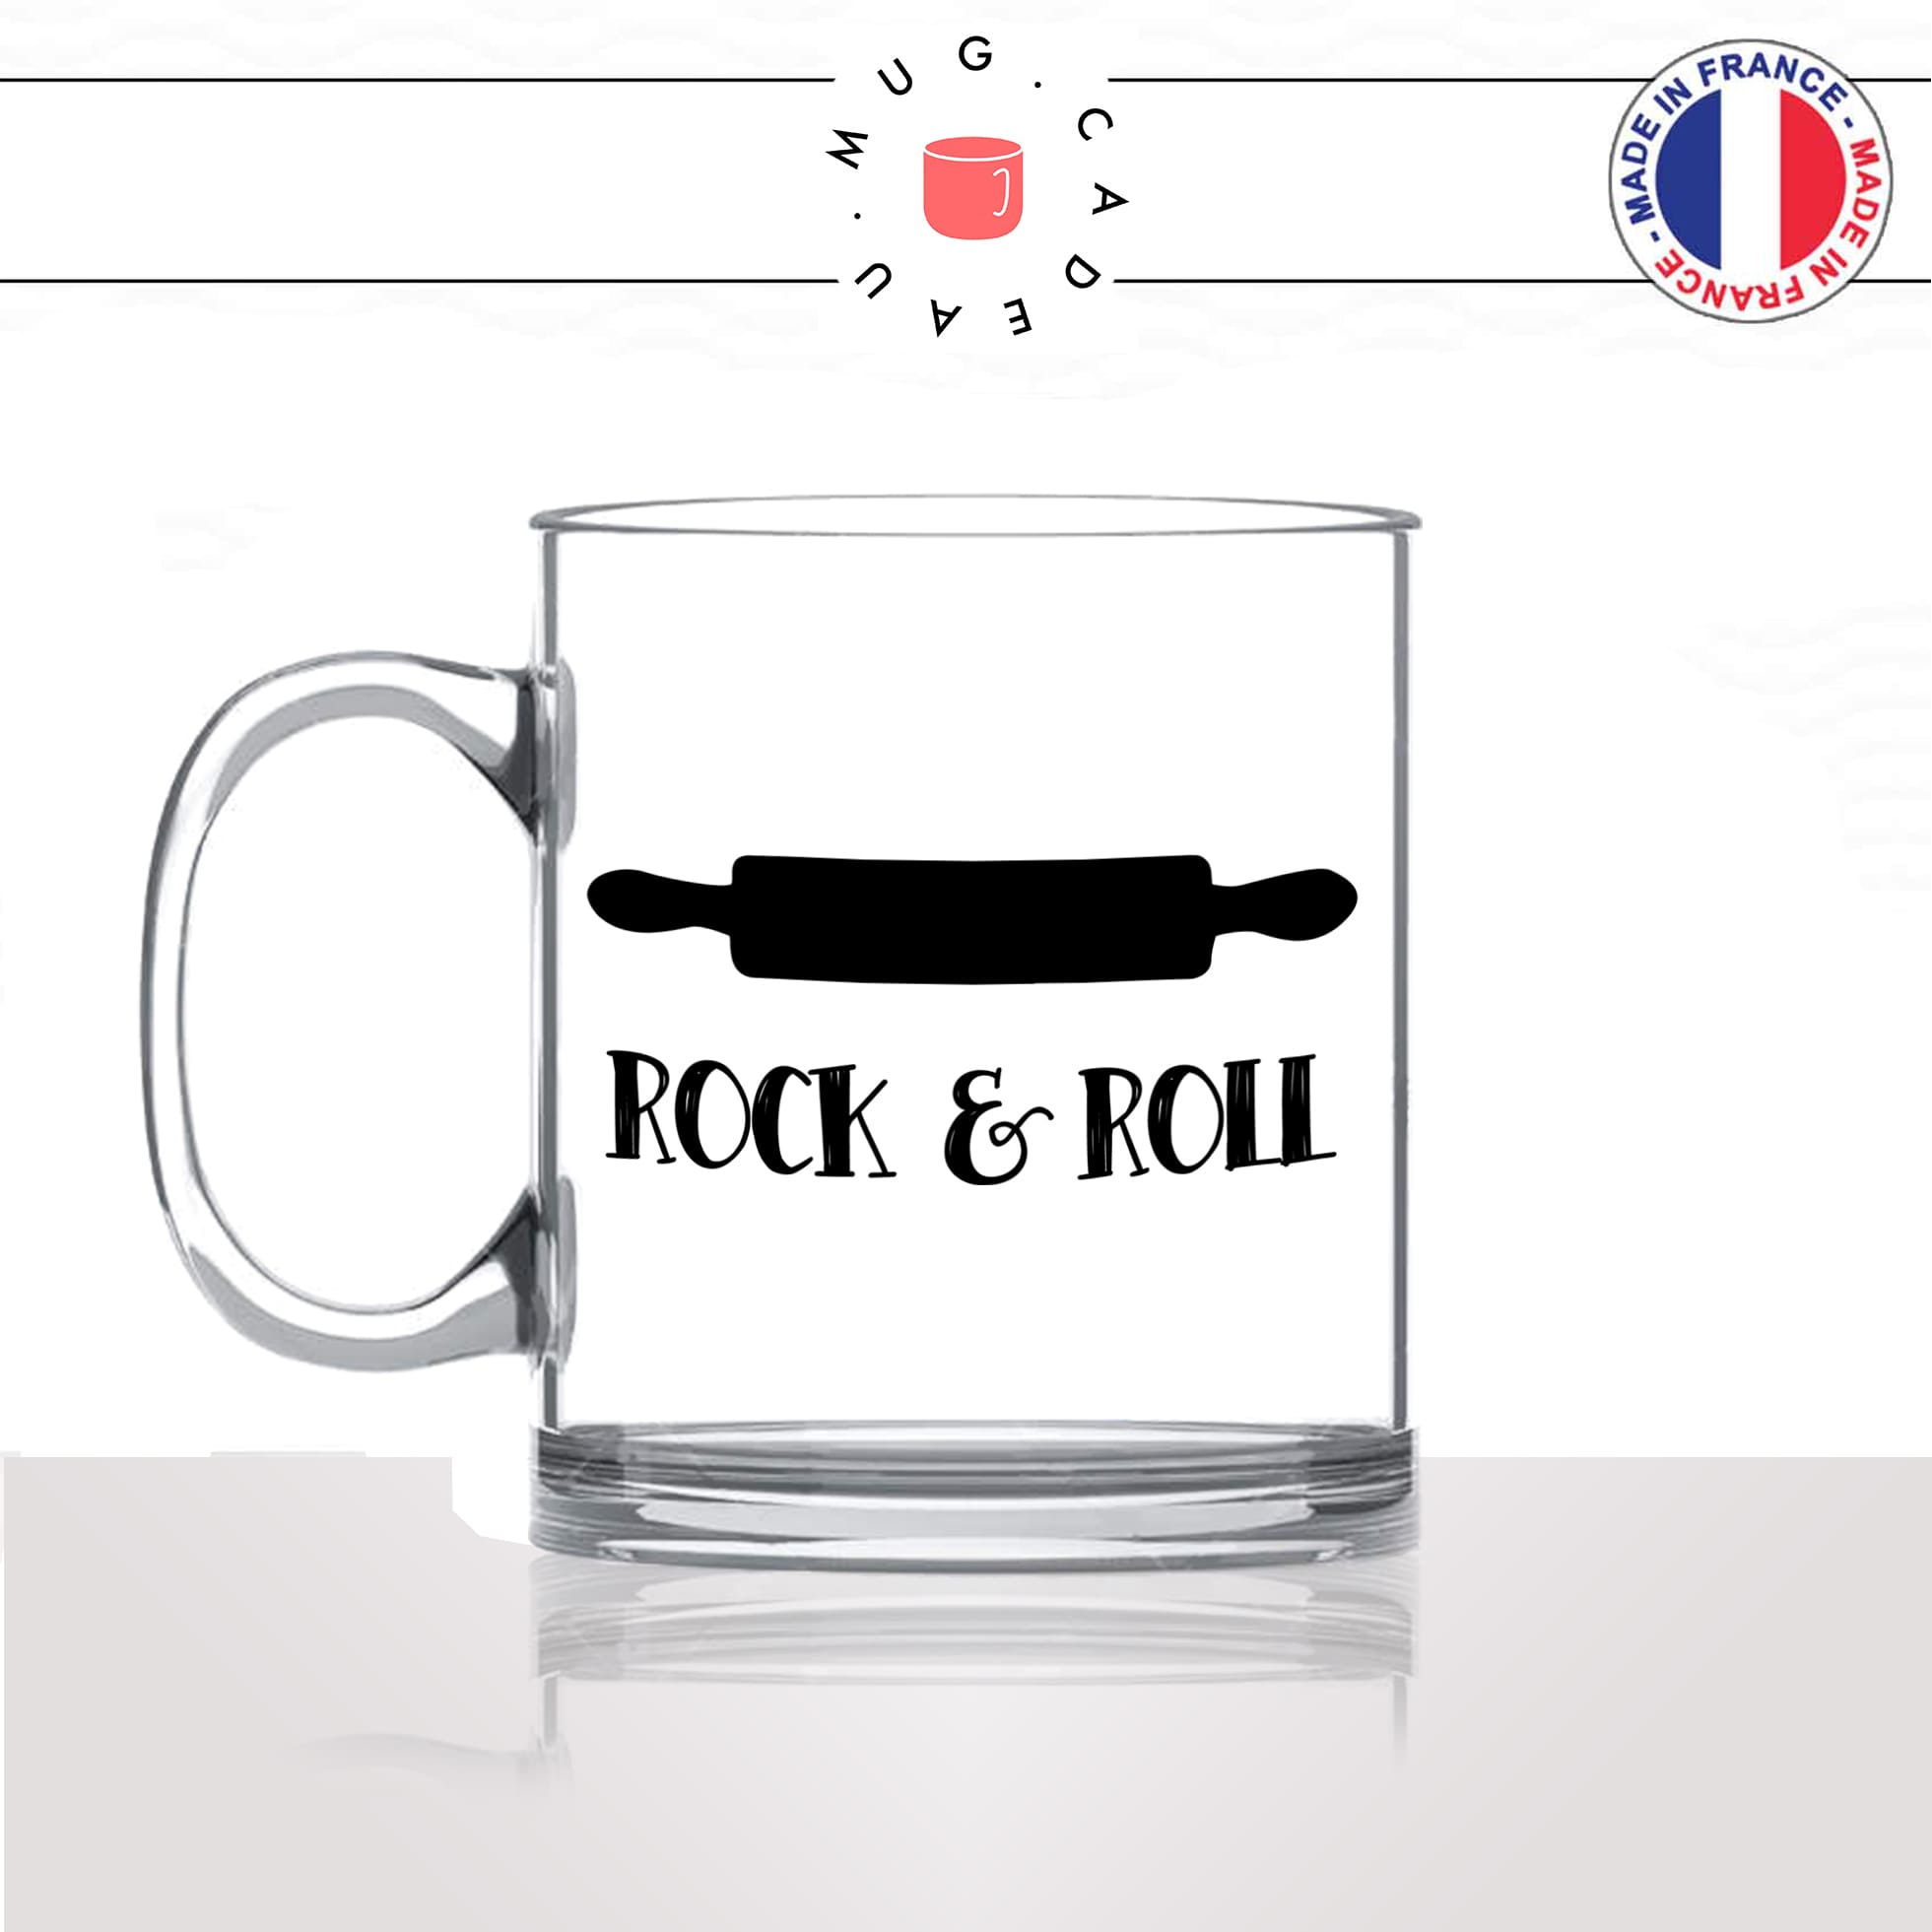 mug-tasse-en-verre-transparent-glass-rock-and-roll-rouleau-a-patisserie-cuisine-humour-stylé-passion-idée-cadeau-fun-cool-café-thé